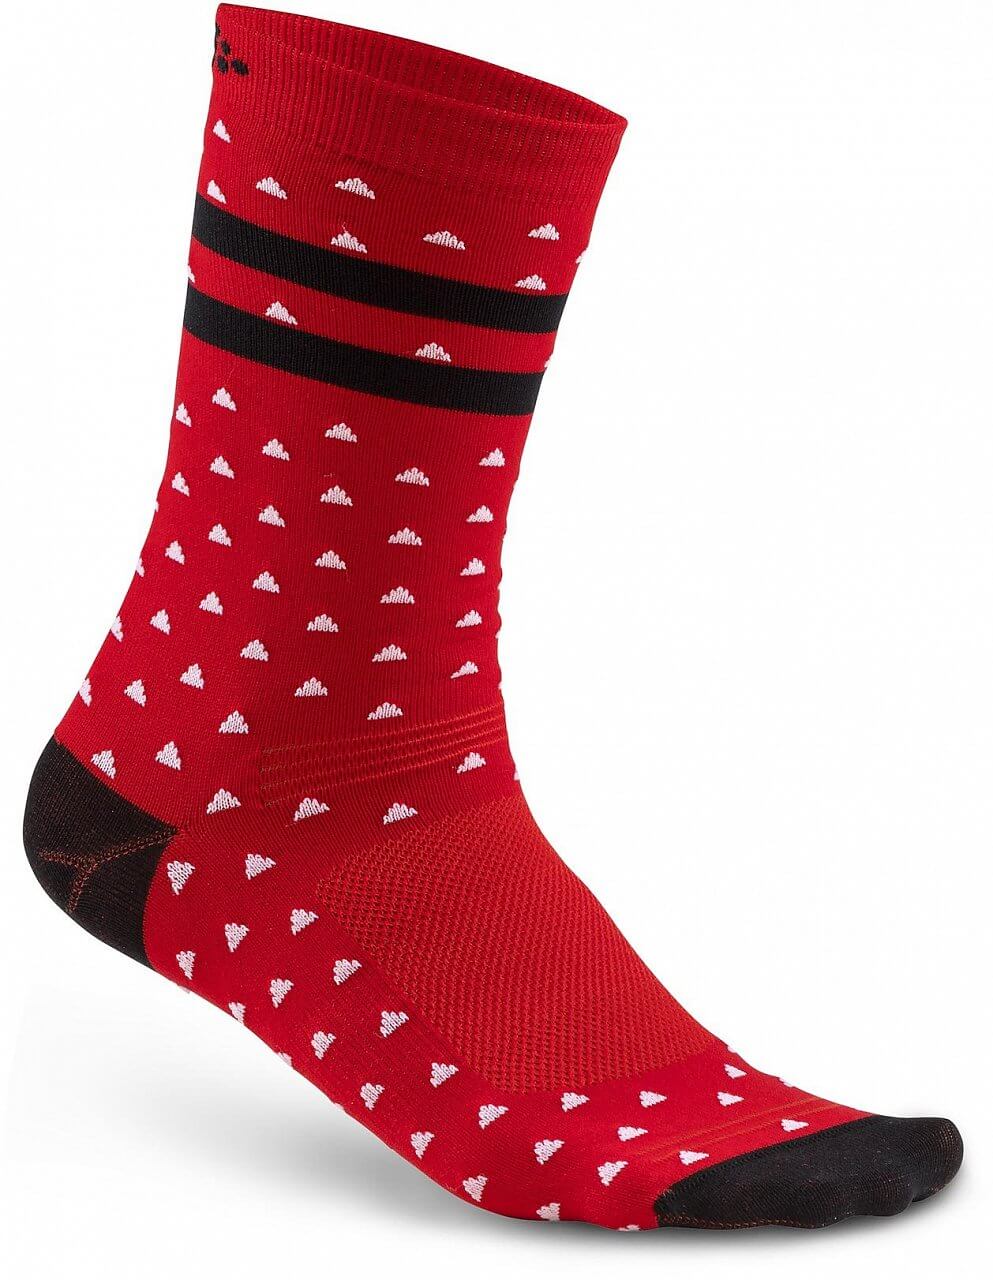 Unisex sporotvní ponožky Craft Ponožky Pattern